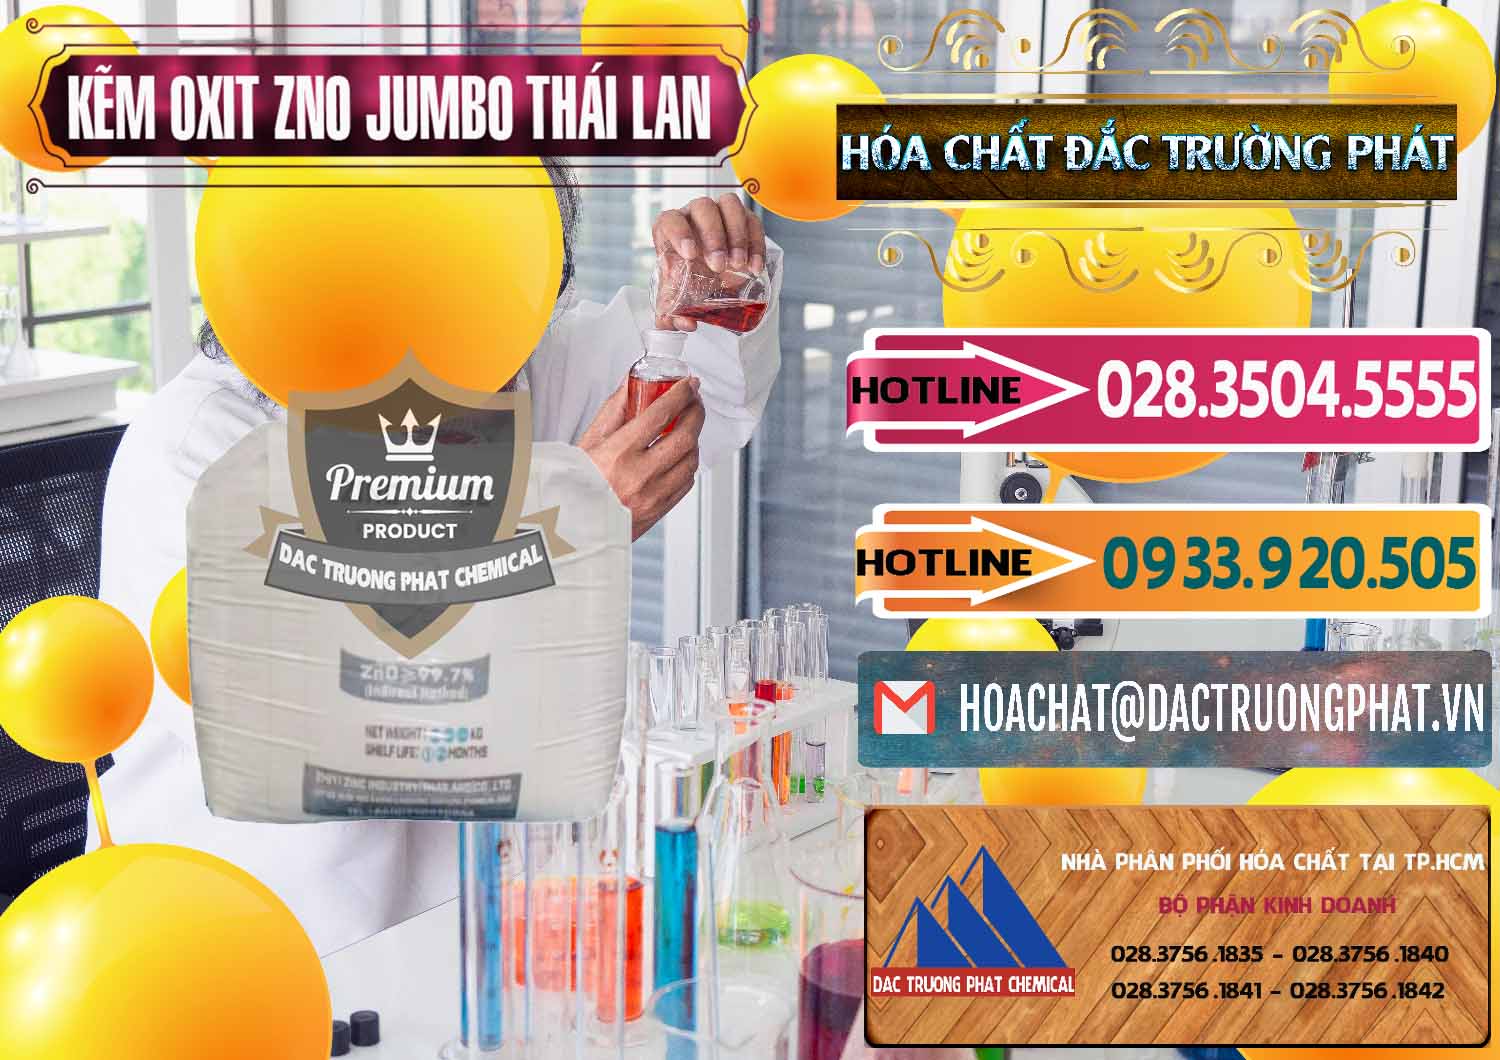 Công ty bán và cung ứng Zinc Oxide - Bột Kẽm Oxit ZNO Jumbo Bành Thái Lan Thailand - 0370 - Chuyên cung cấp - phân phối hóa chất tại TP.HCM - dactruongphat.vn